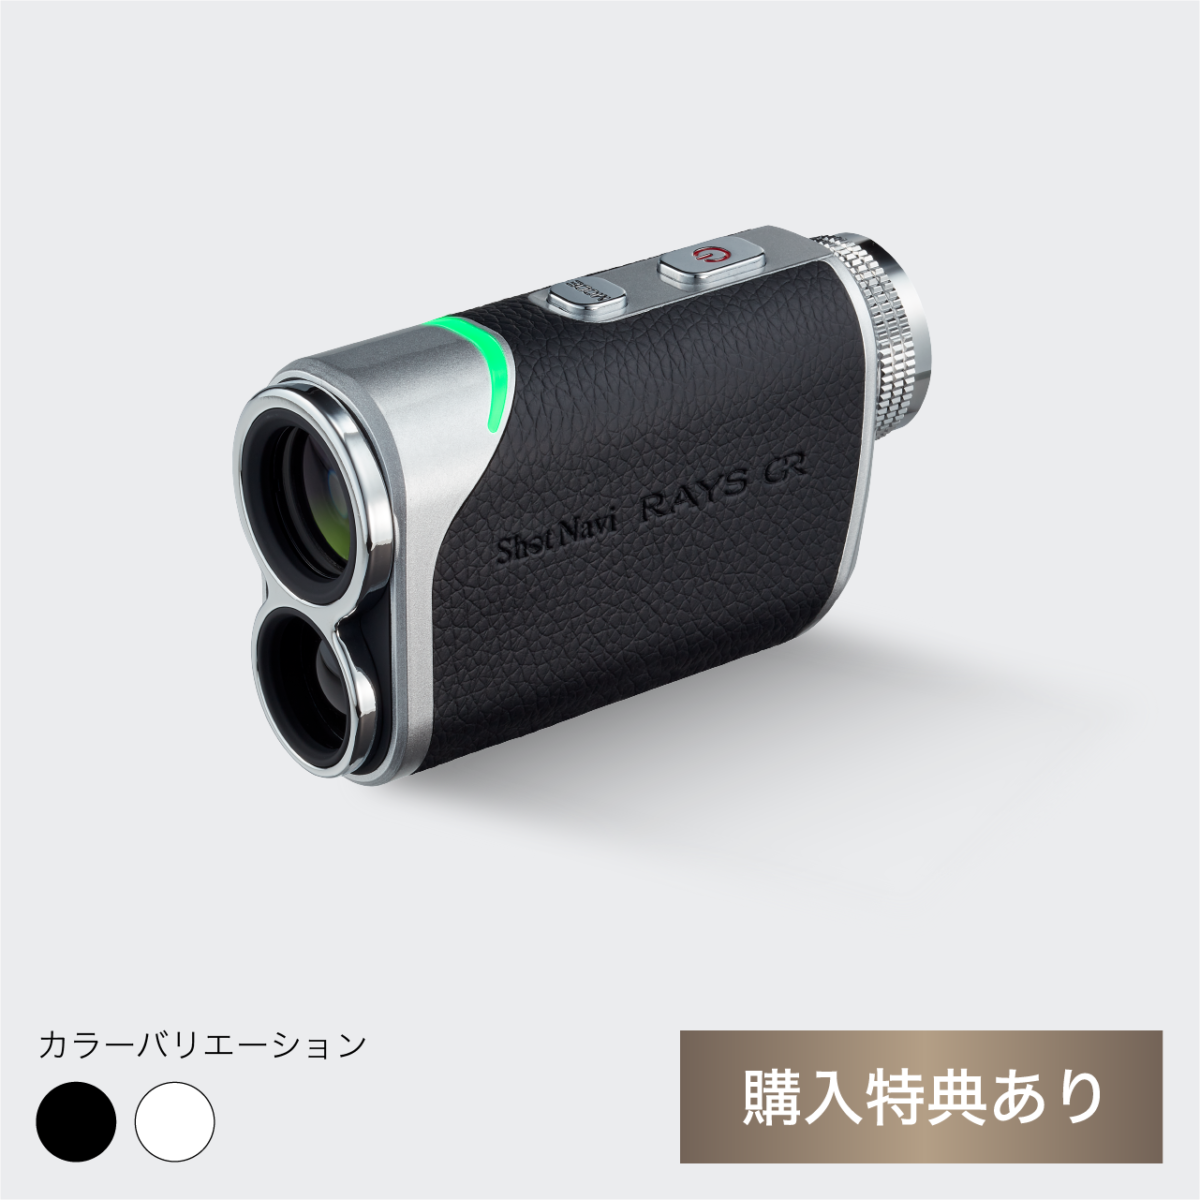 製品情報 – 【公式通販】ShotNavi ショットナビ / ゴルフ用距離計測機 